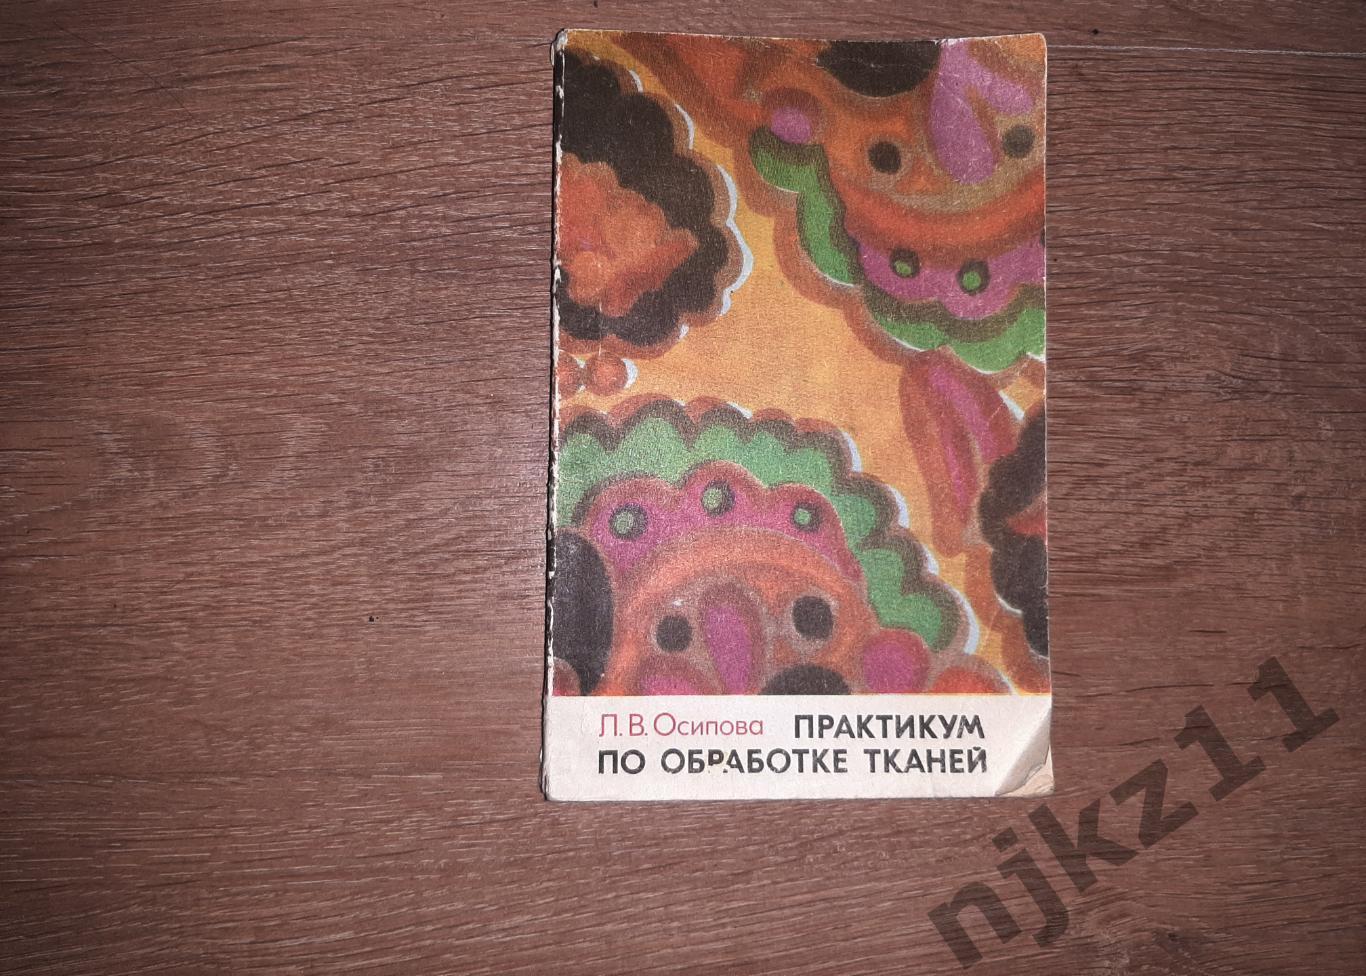 Осипова, Л.В. Практикум по обработке тканей